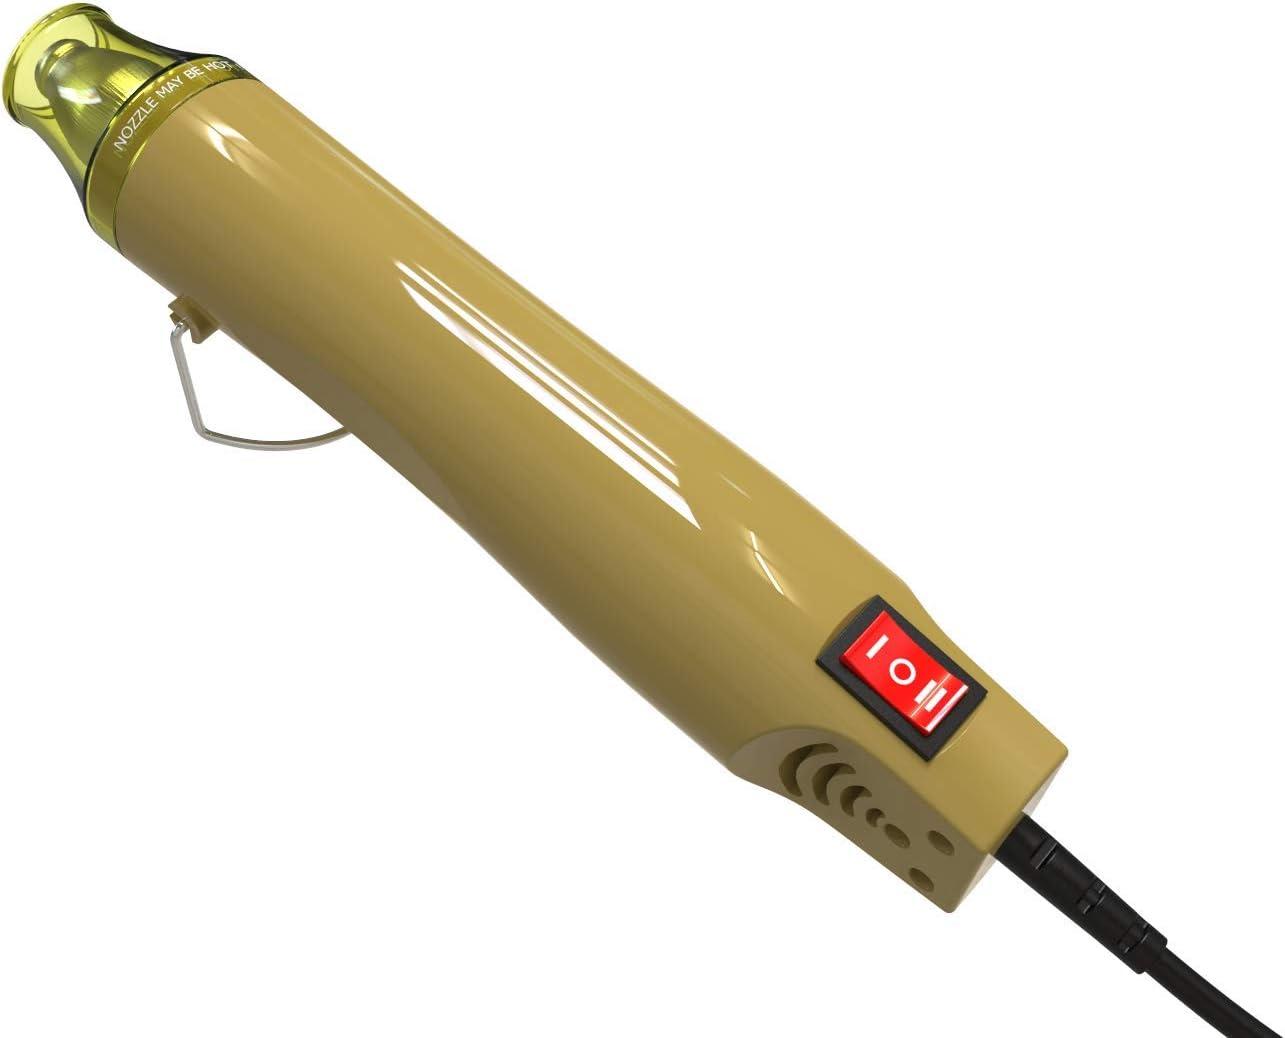 Heat Gun for Crafts, Mini Dual Temp Hot Air Gun Tool South Africa